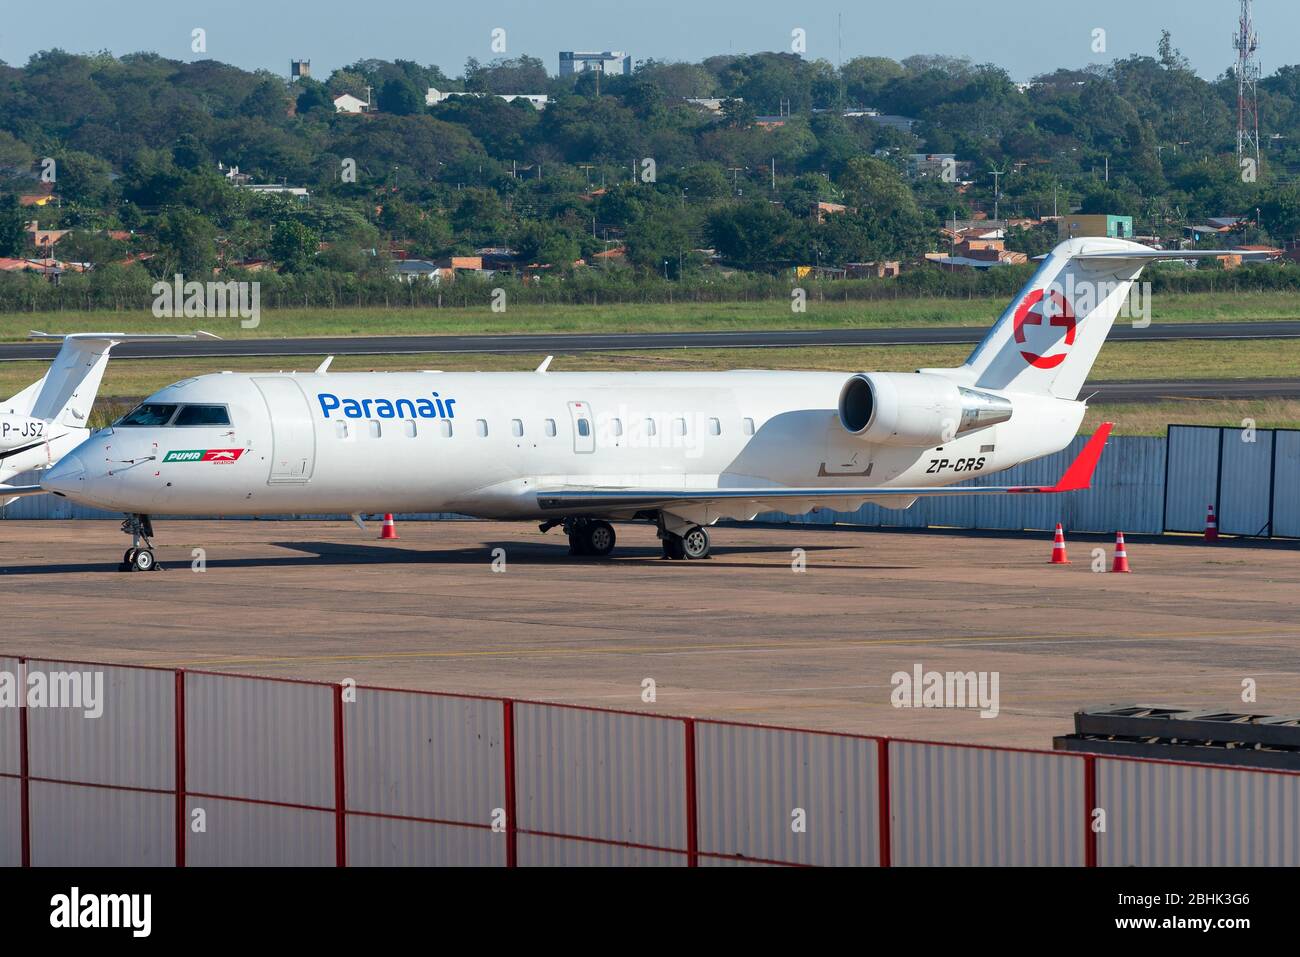 Paranair Bombardier CRJ-200 stationné à l'aéroport international Silvio Pettirossi Asunción, au Paraguay. Paranair est une nouvelle compagnie aérienne paraguayenne. ZP-CRS. Banque D'Images